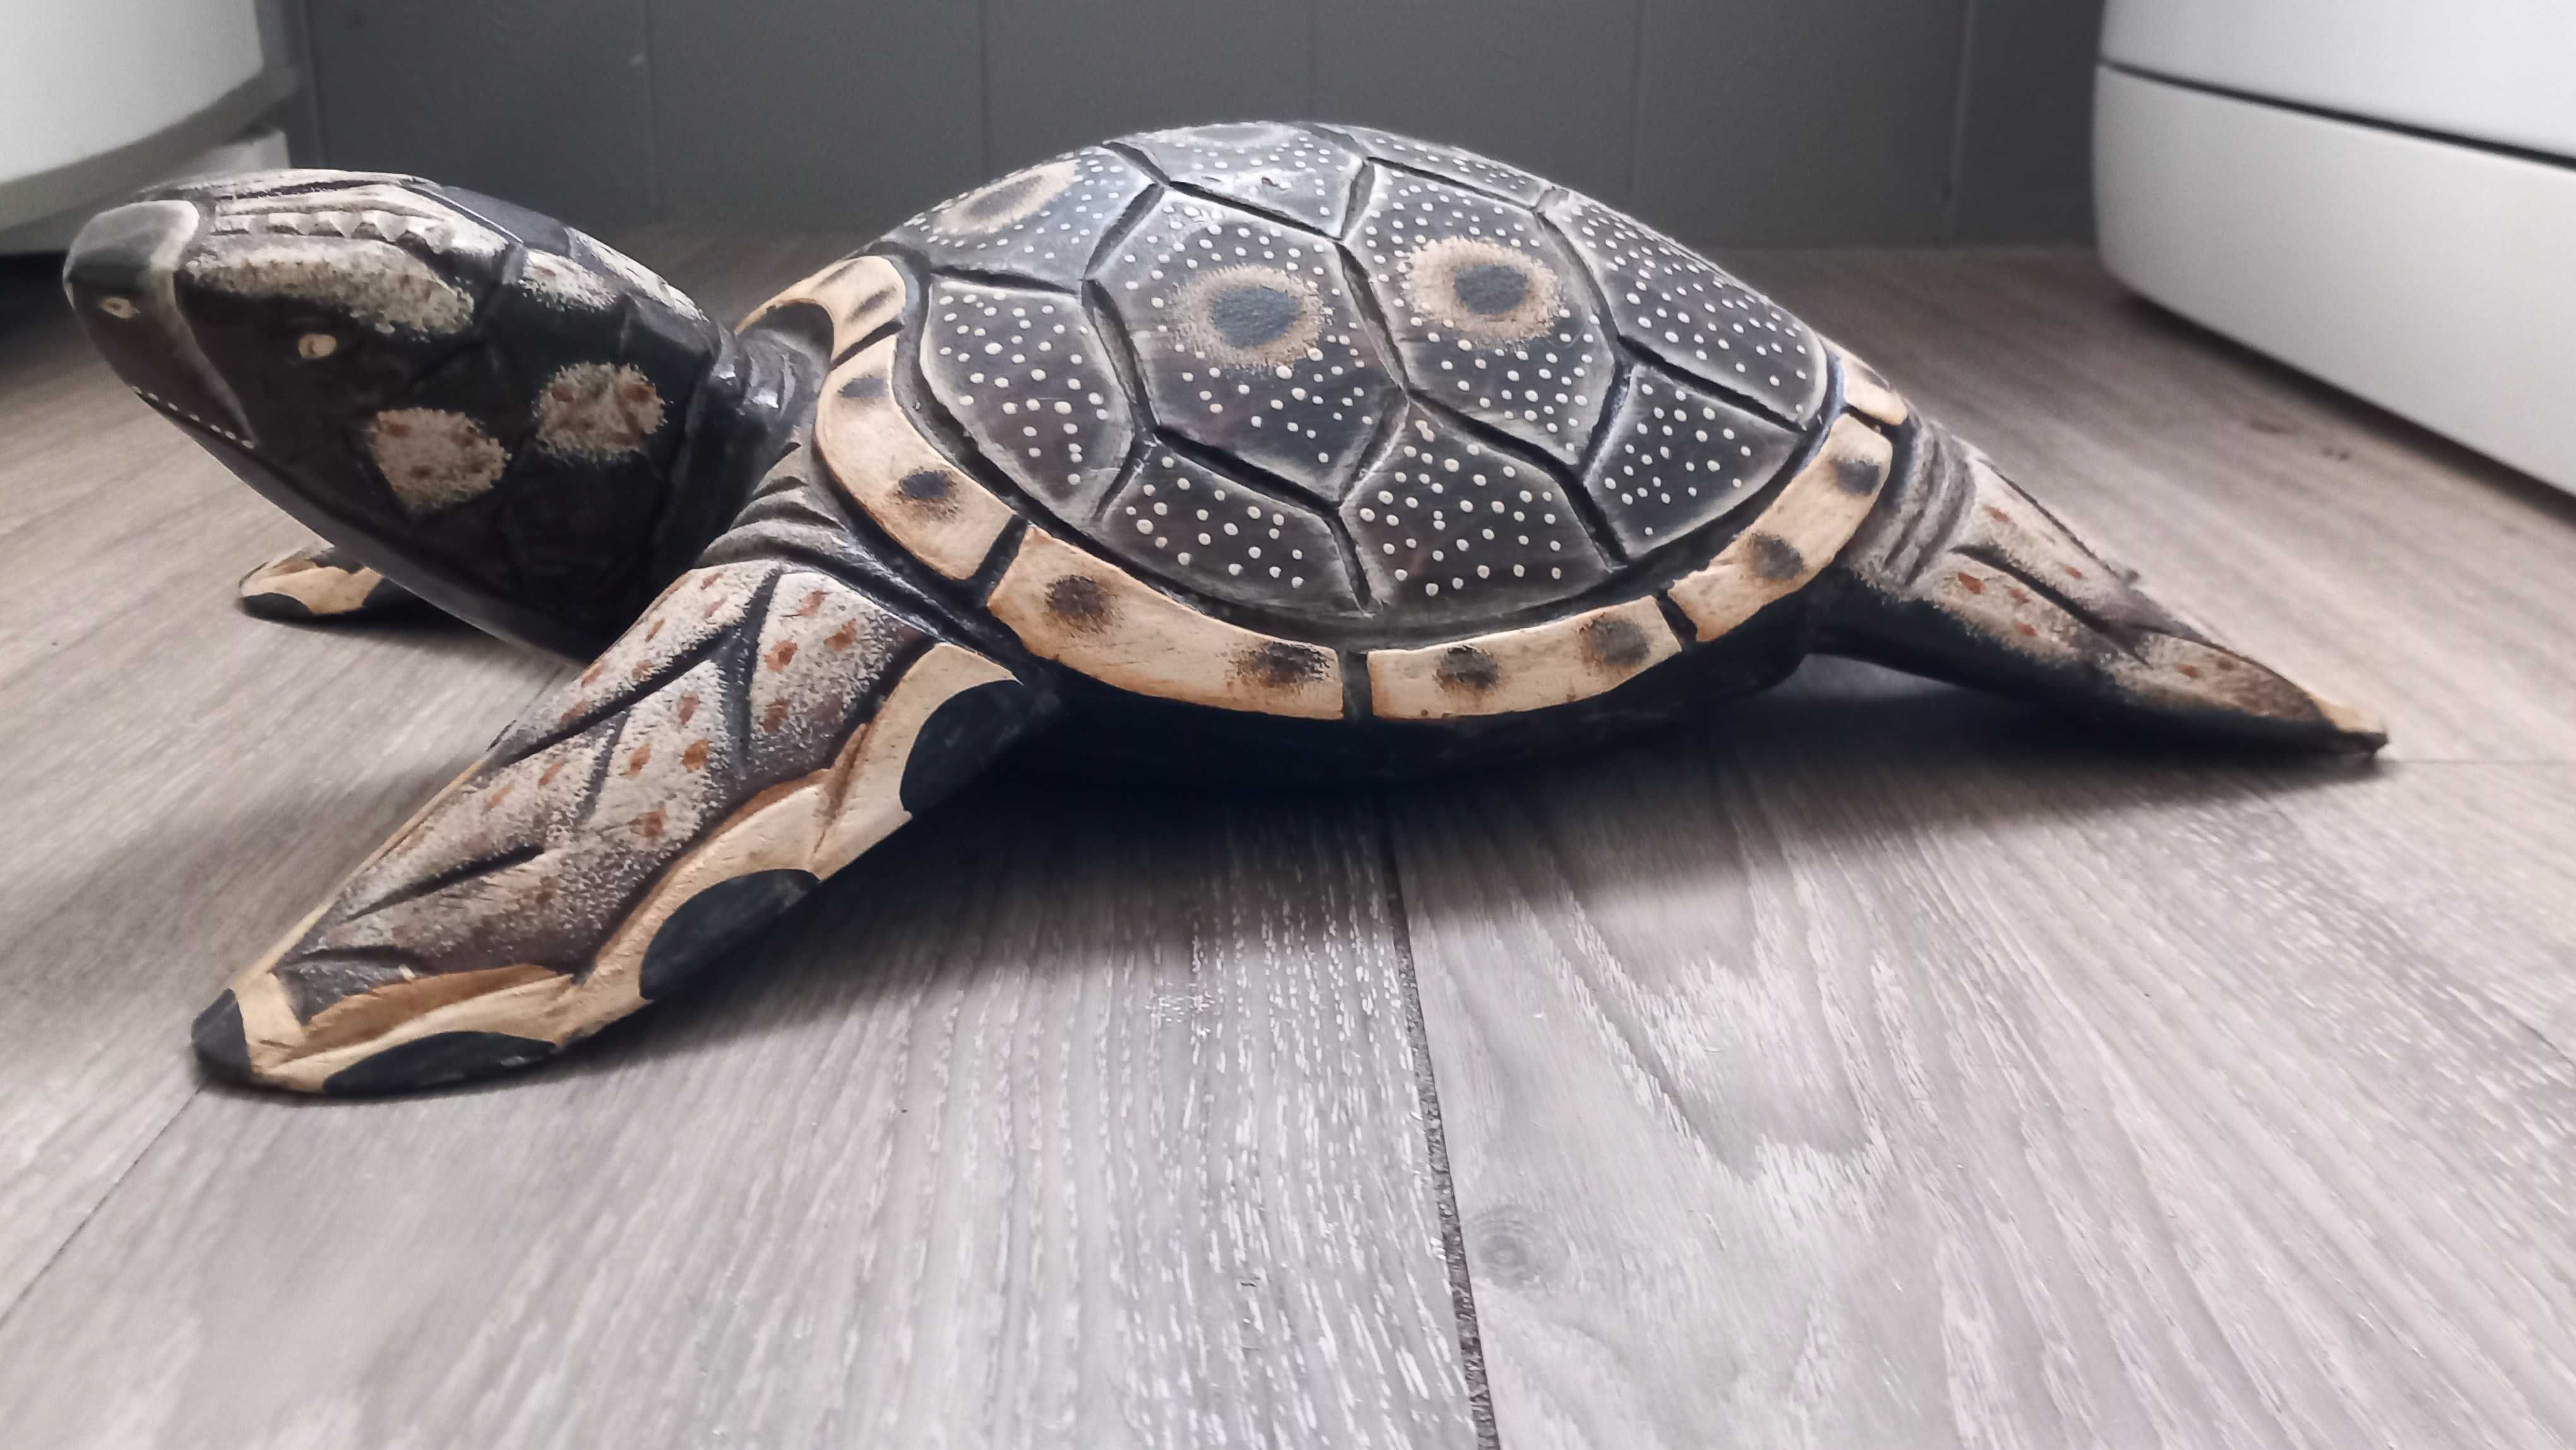 Tartaruga esculpida em madeira maciça com motivos africanos